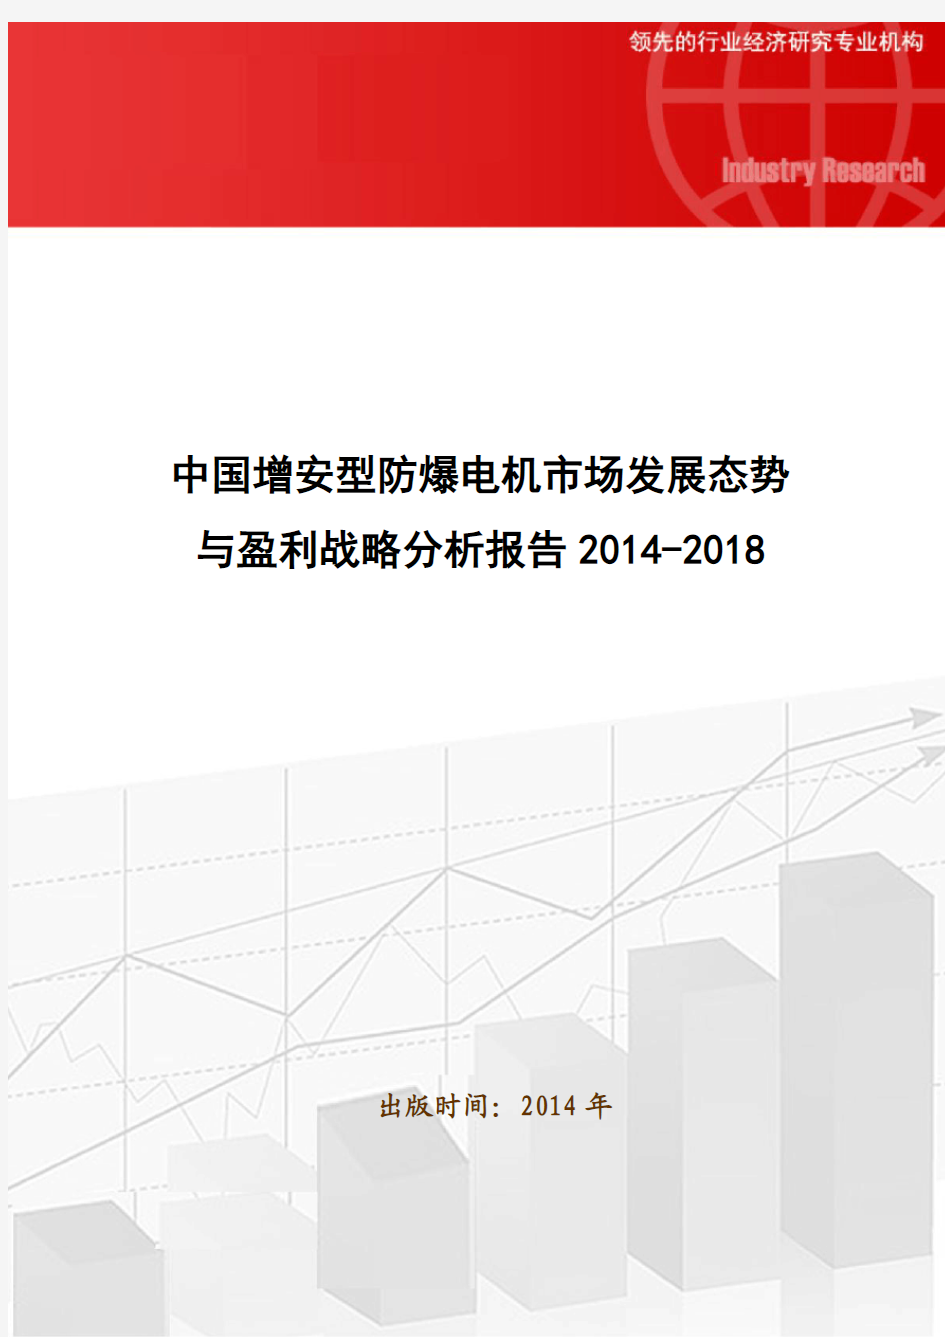 中国增安型防爆电机市场发展态势与盈利战略分析报告2014-2018